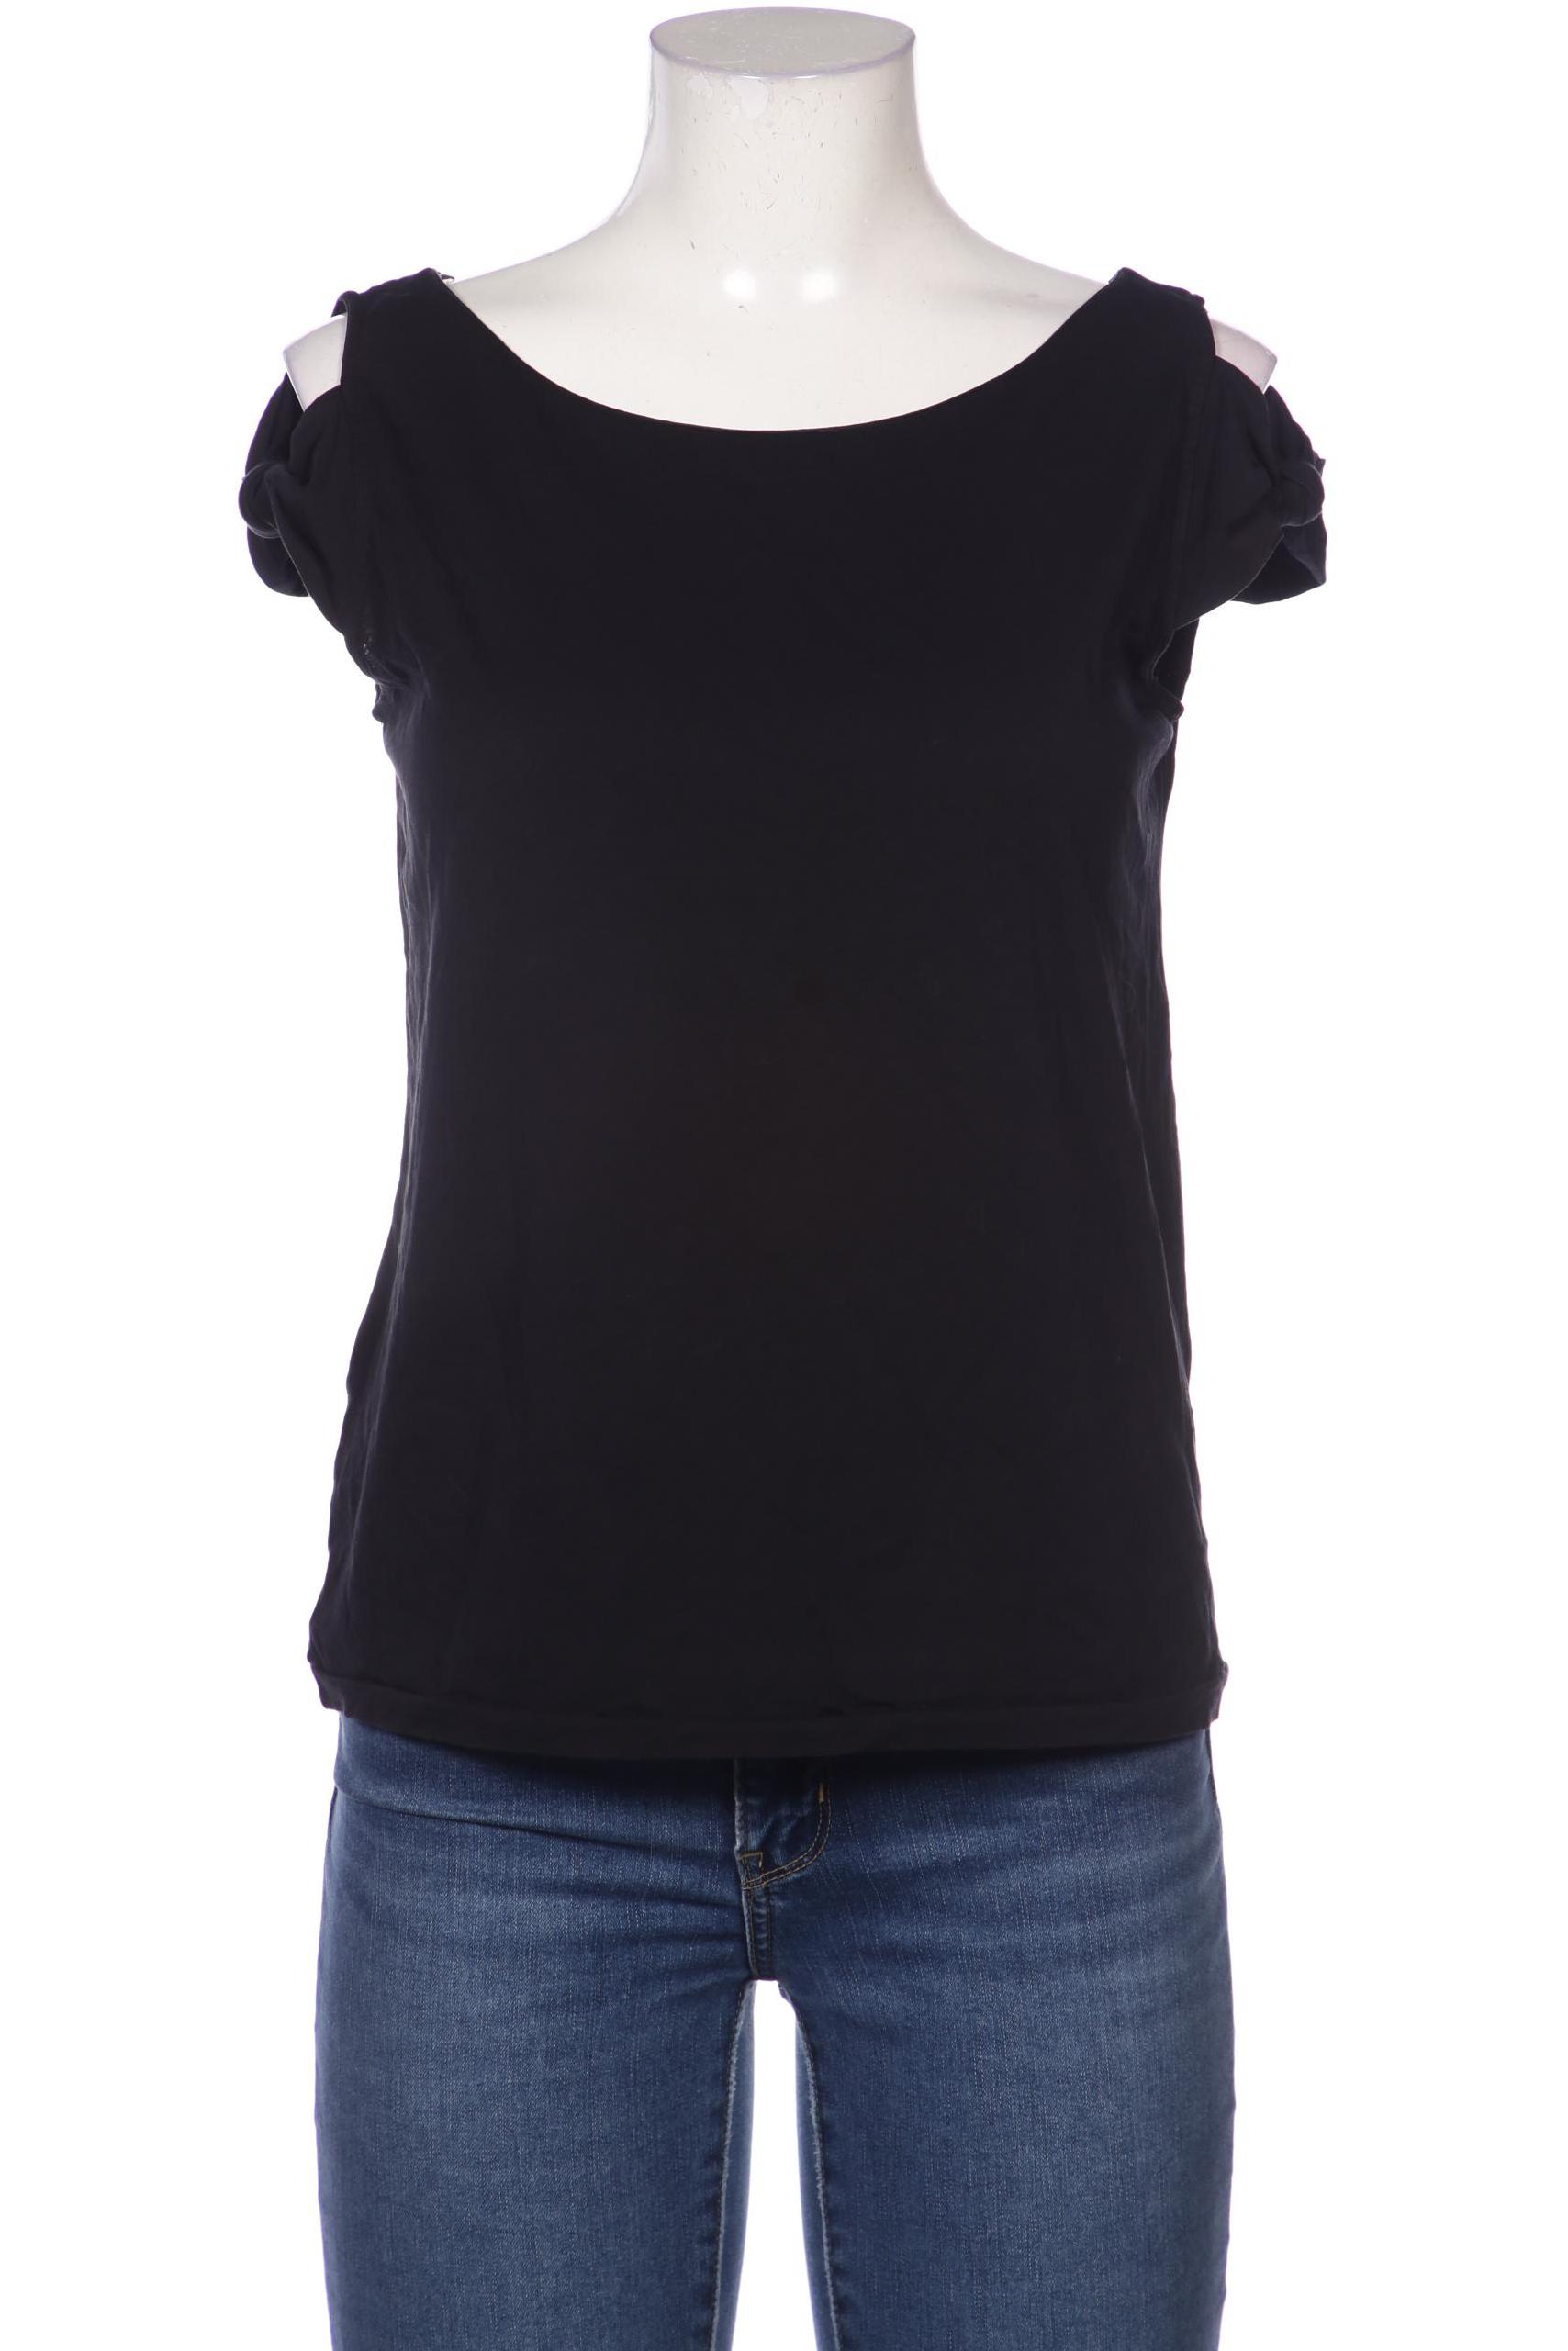 Stefanel Damen T-Shirt, schwarz von Stefanel